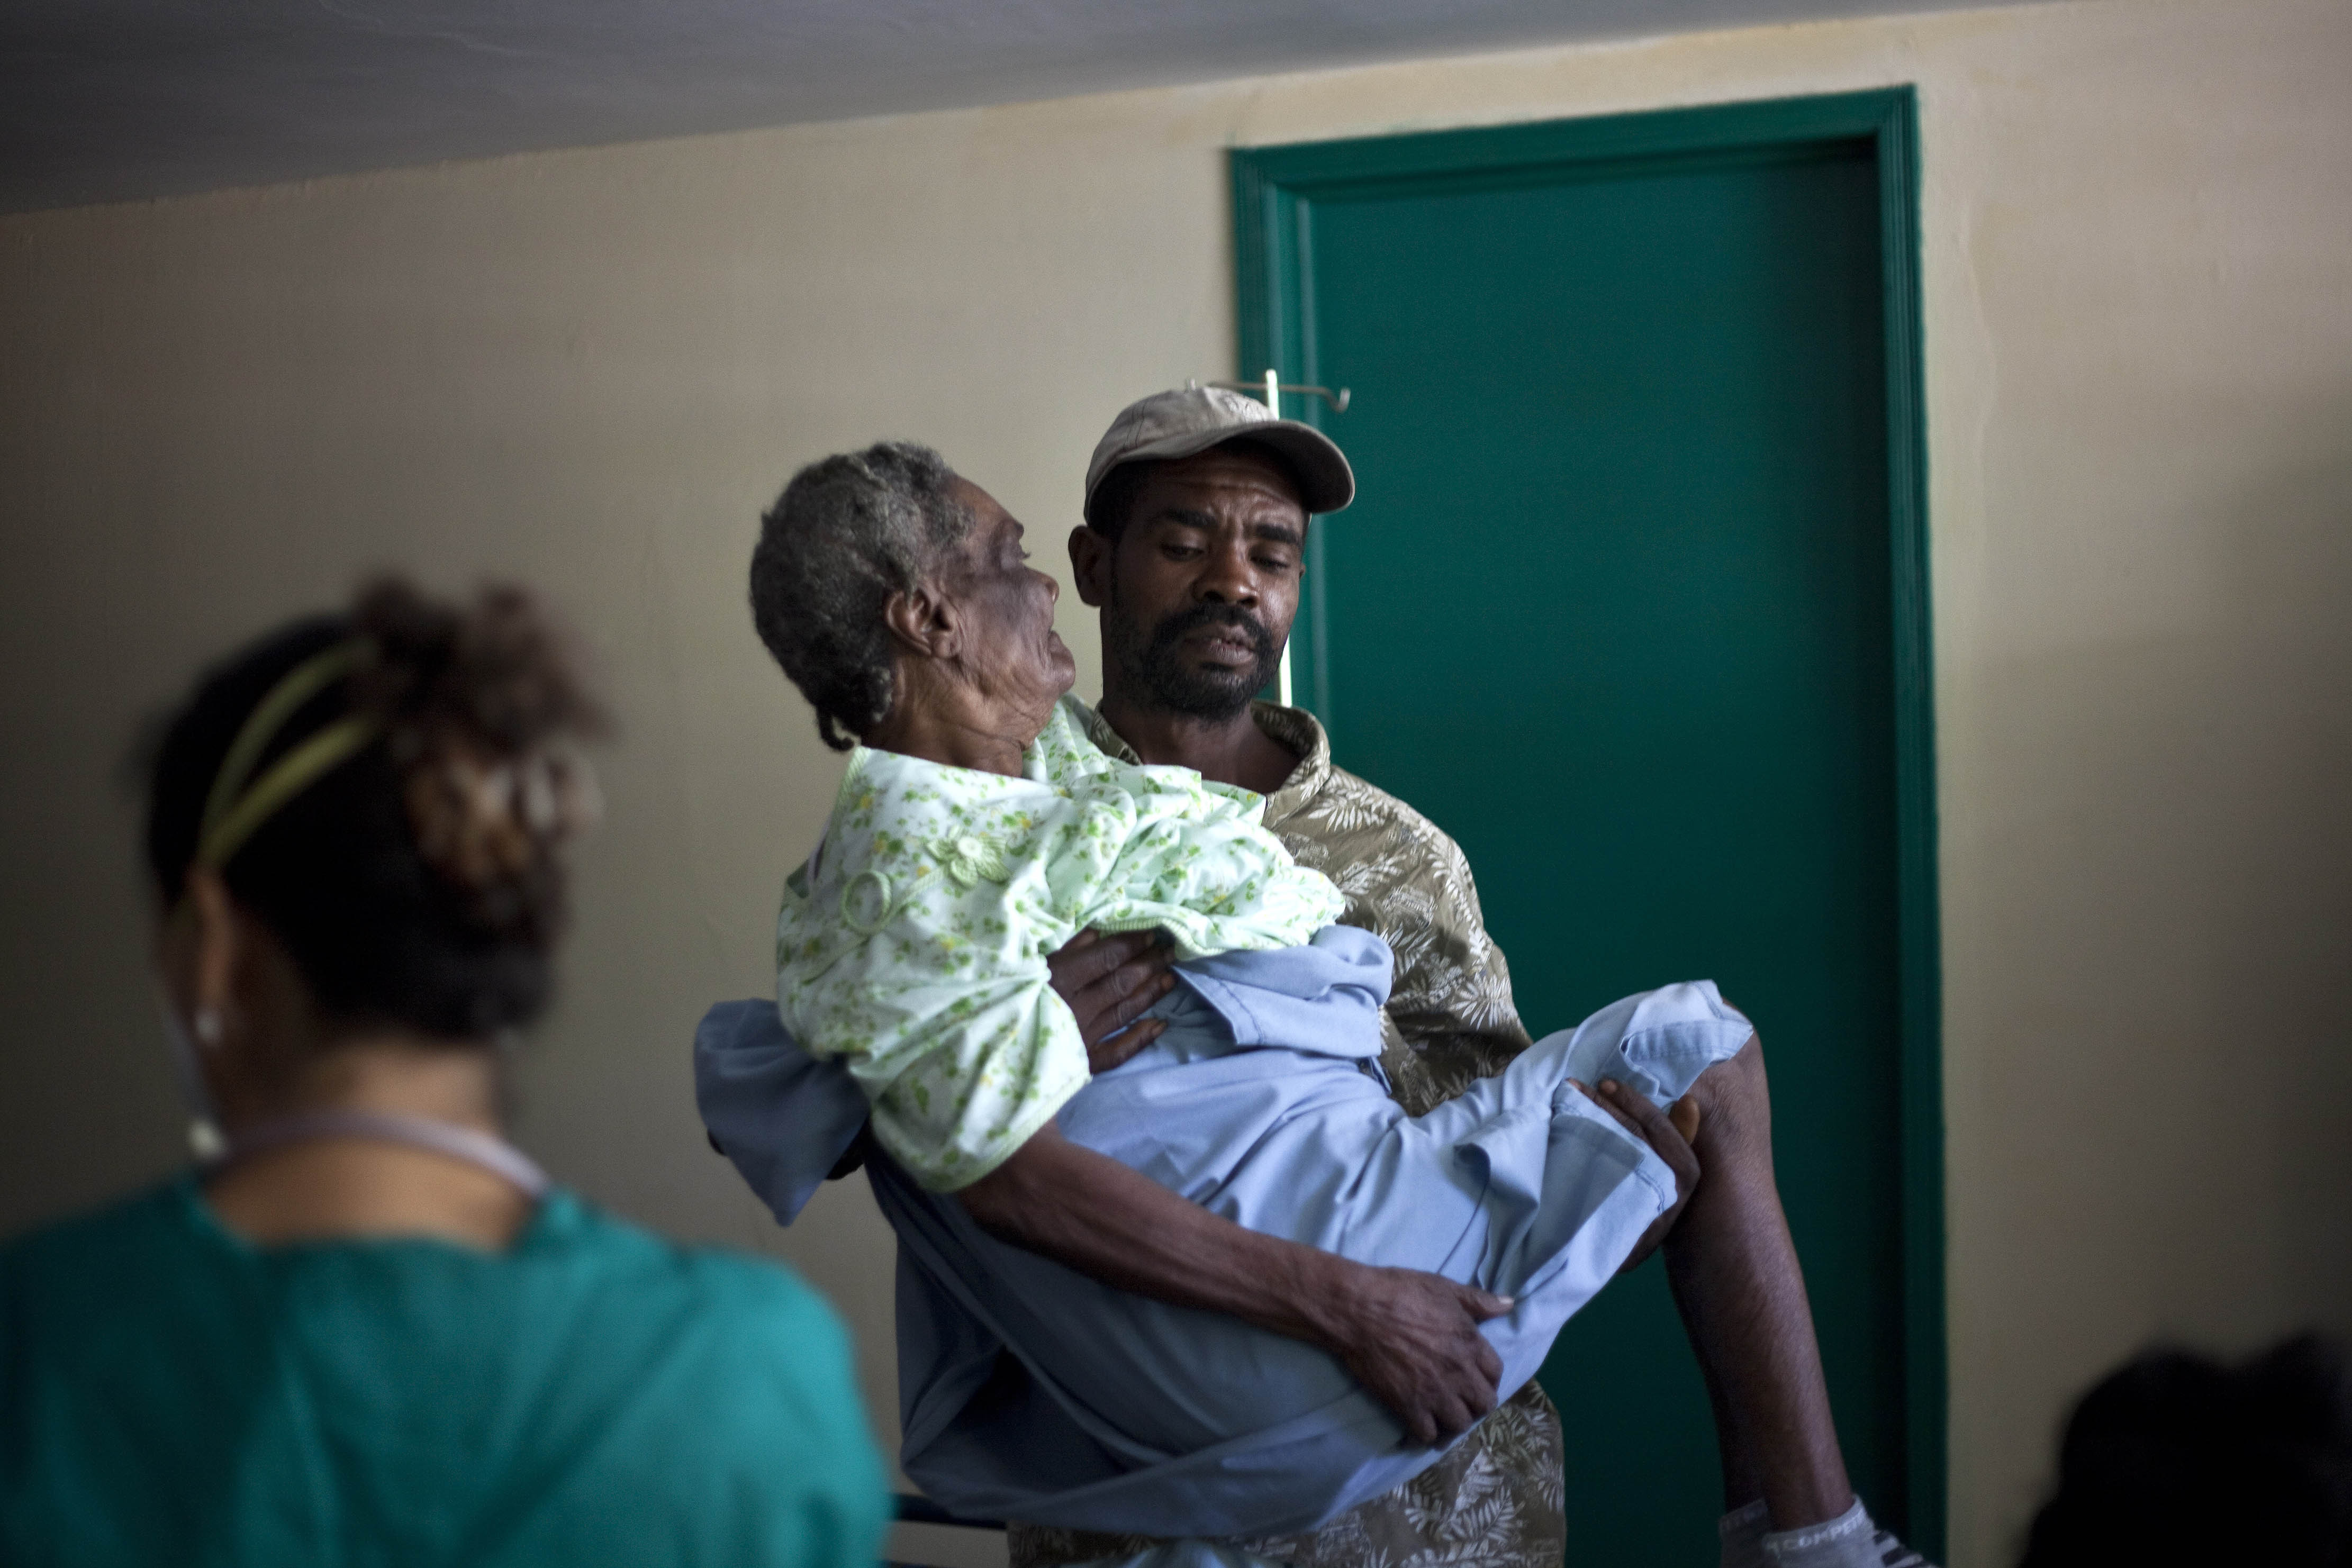 Port-au-Prince, Sjukdom, Haiti, Brott och straff, Kolera, Dödsfall